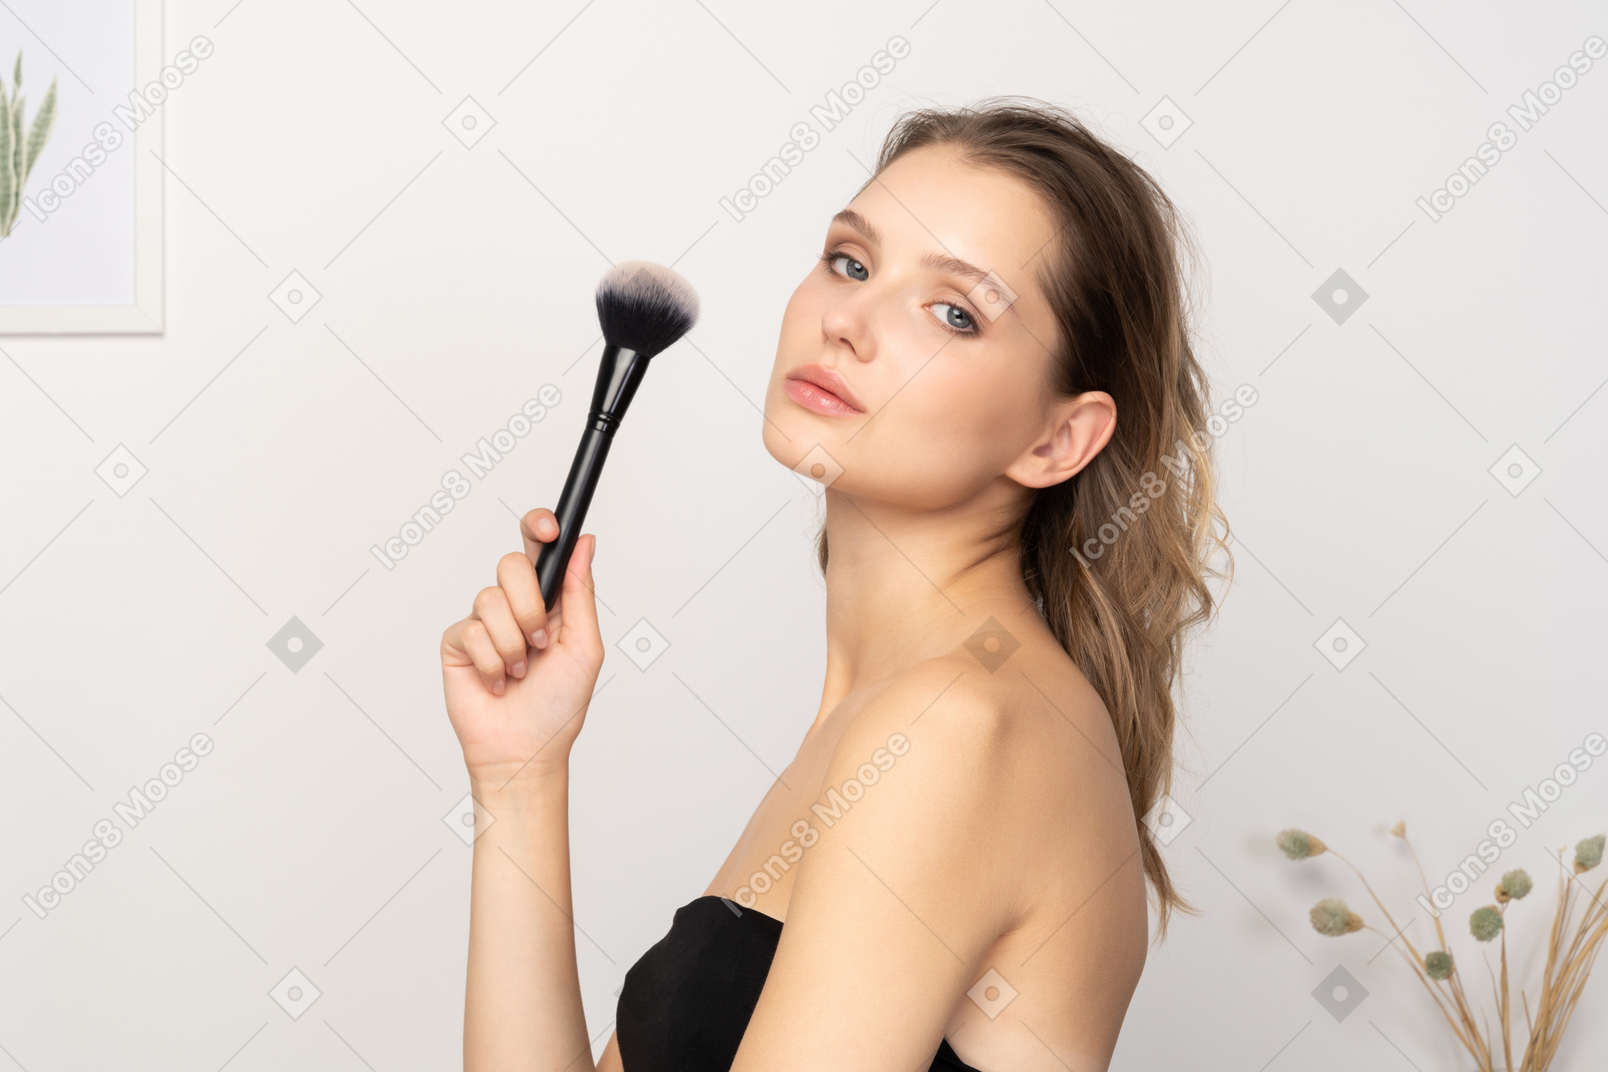 化粧ブラシを保持し、カメラを見ている官能的な若い女性の側面図